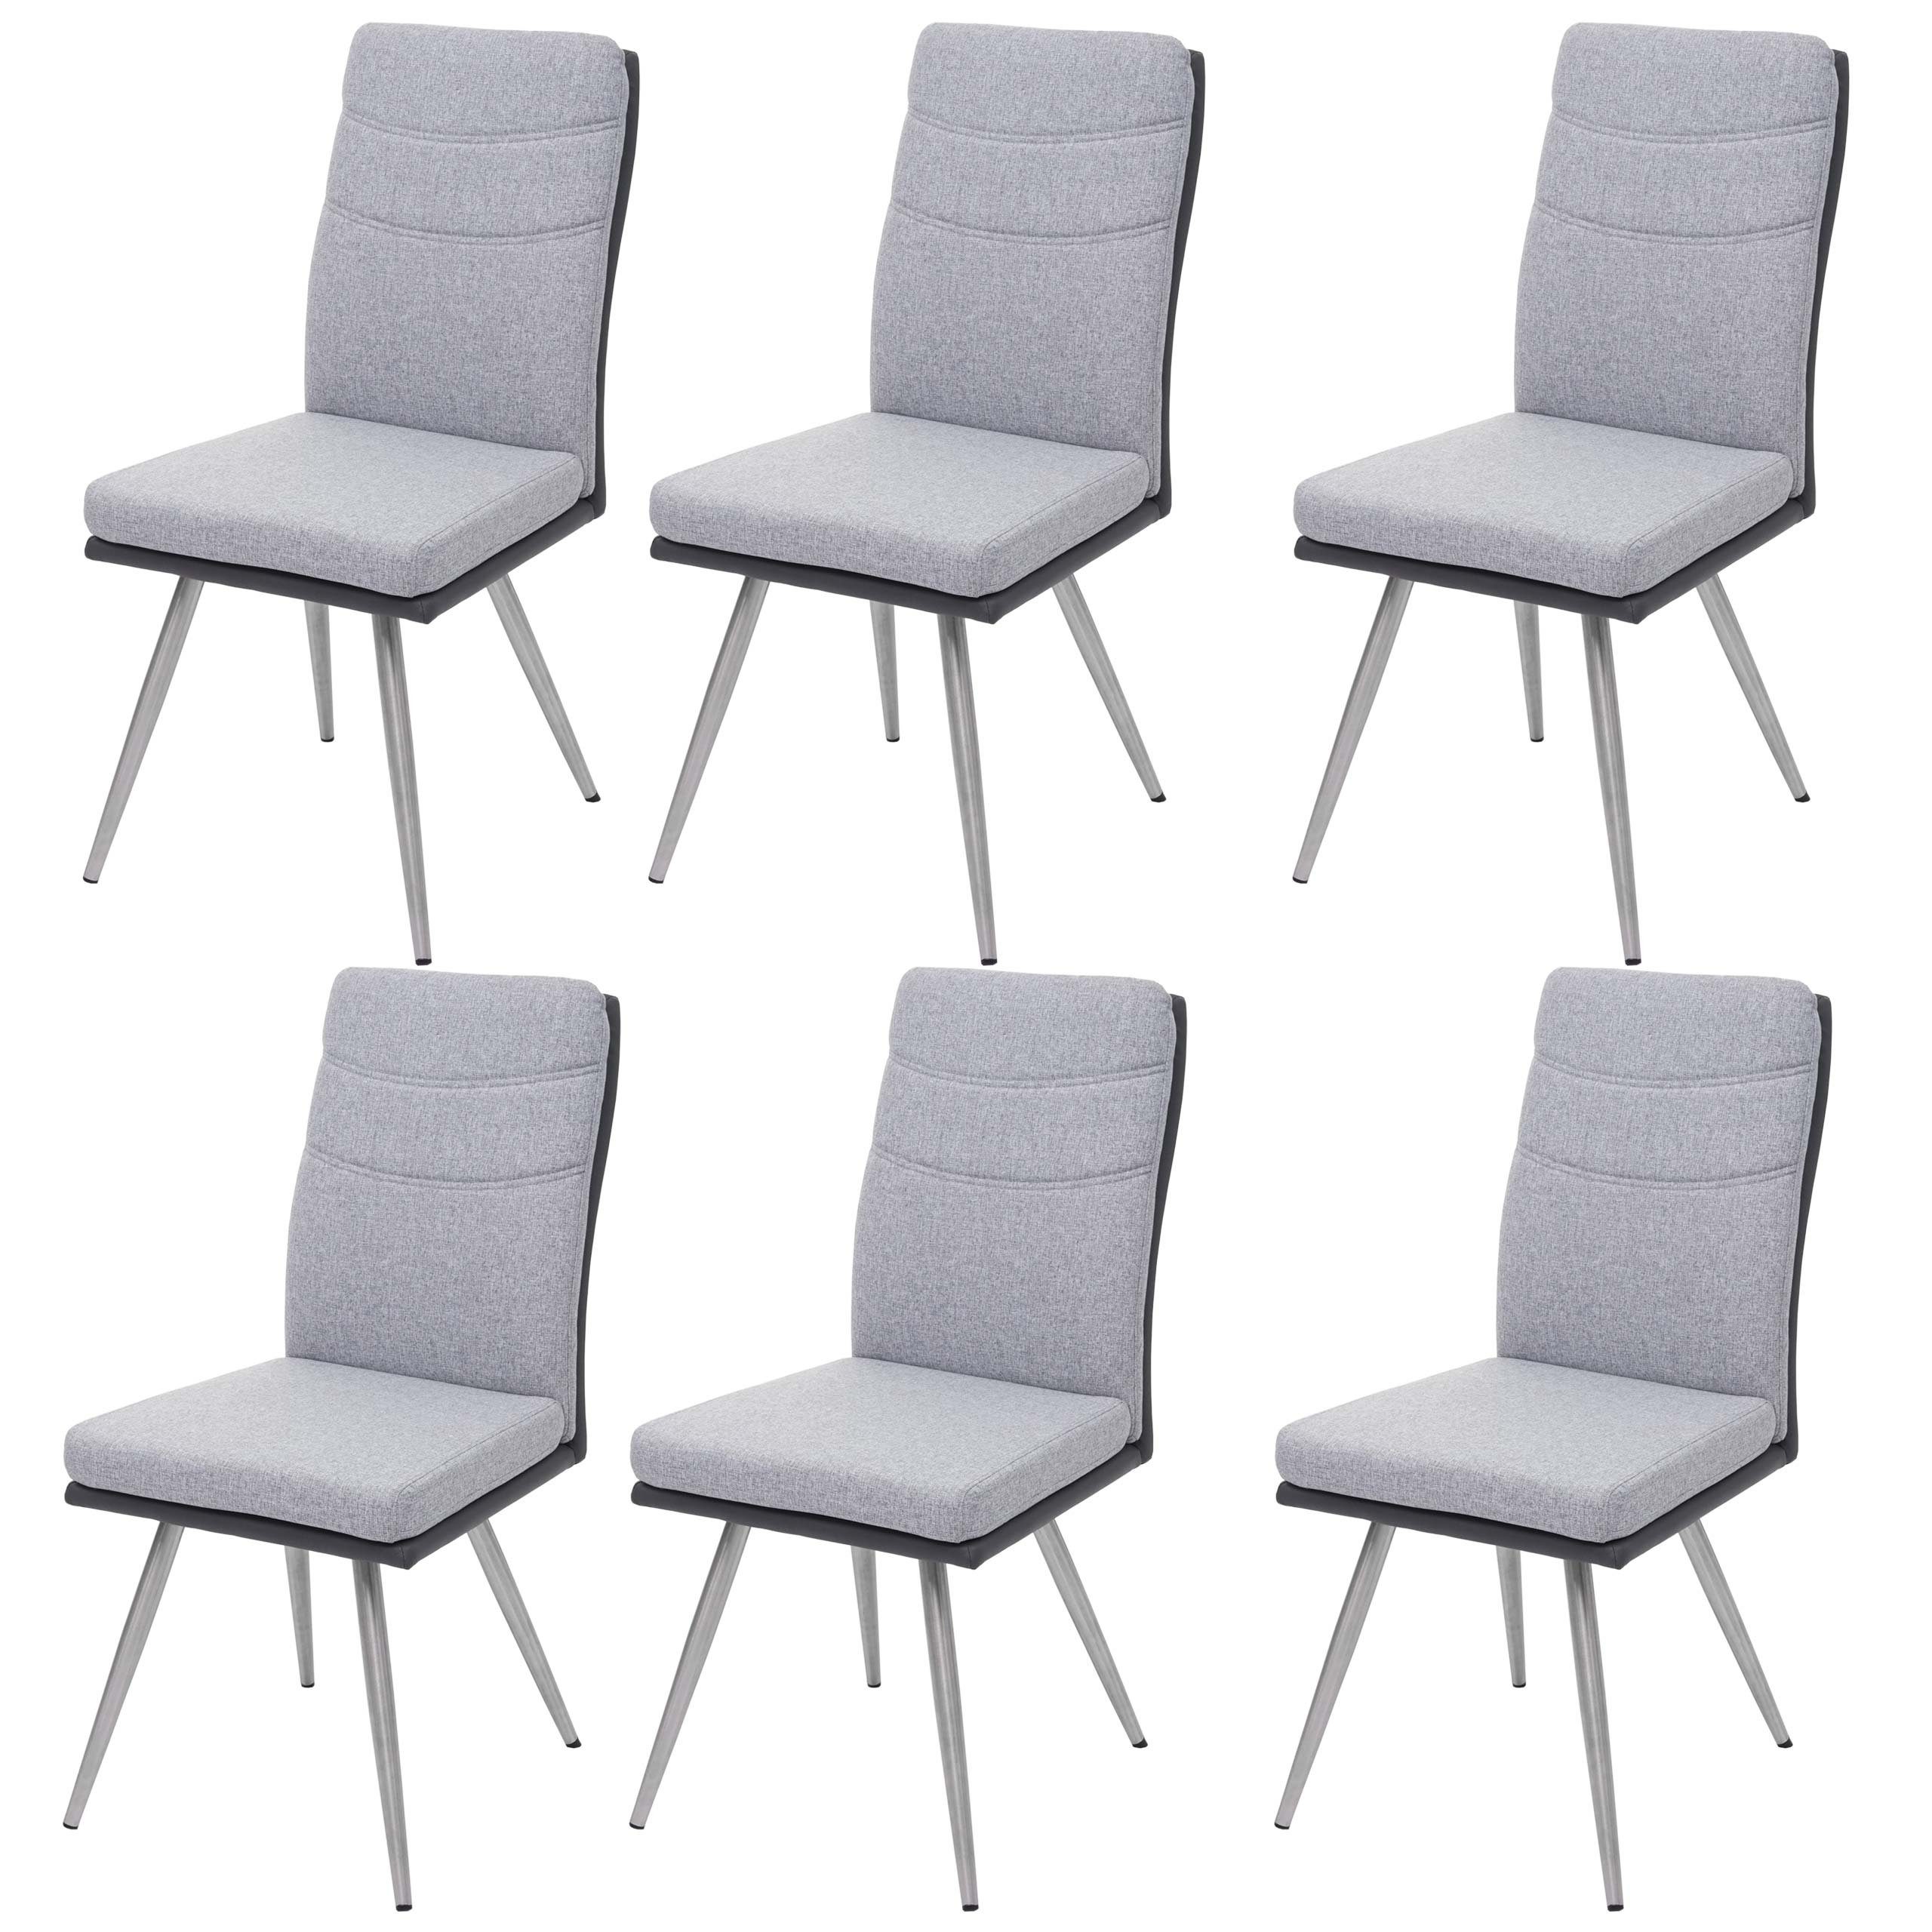 6er-Set, Ziernaht Fußbodenschoner, Armlehne, 6 MCW-G54-4 dekorative MCW (Stühle ohne glänzende Esszimmerstuhl Inklusive St),